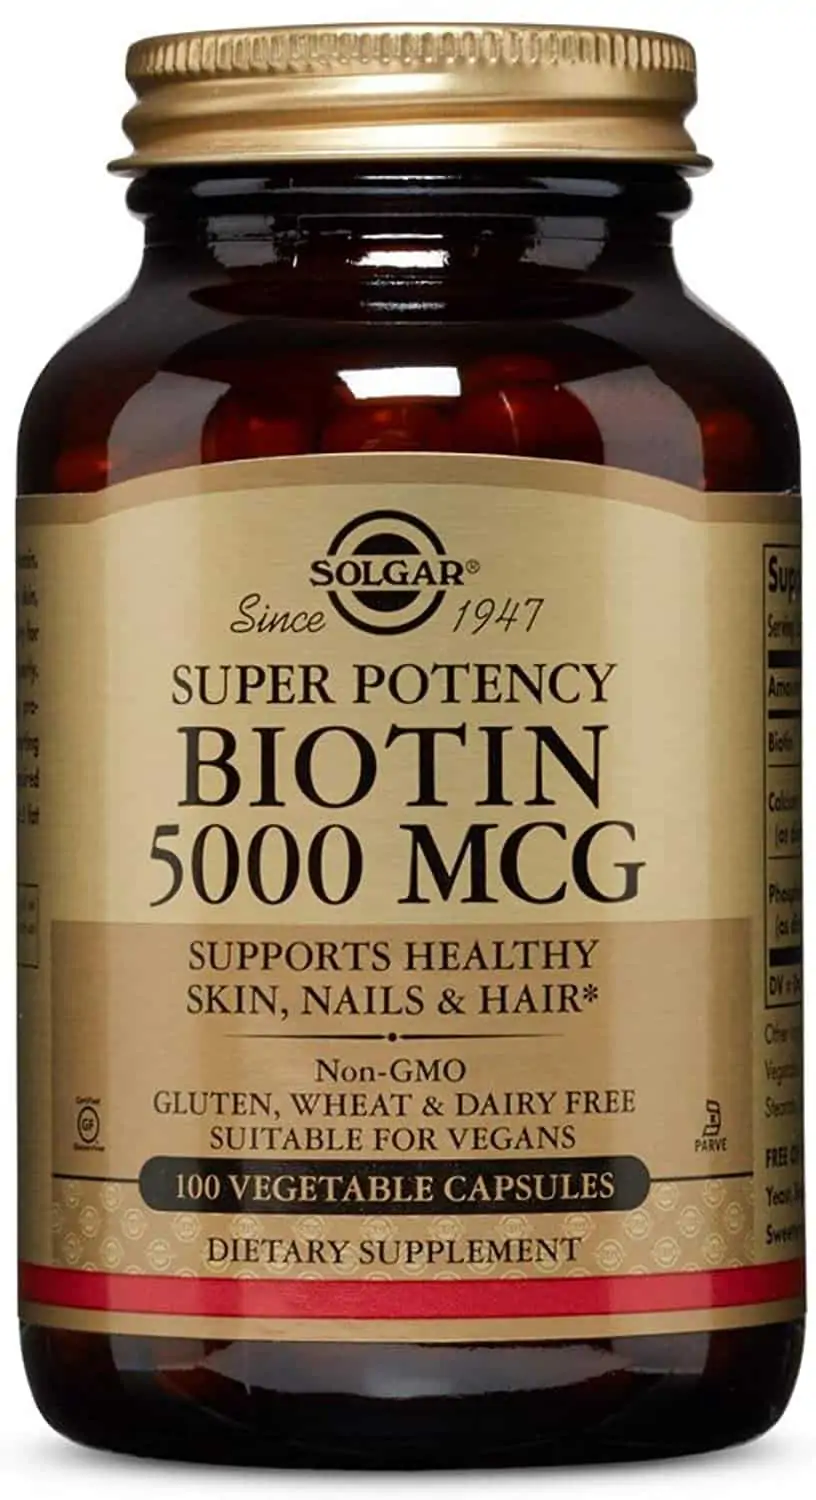 Solgar Biotin 5000Mcg (Biotin, Hair, Skin And Nails) 100 Vegetarian  Capsules - low price, check reviews and dosage